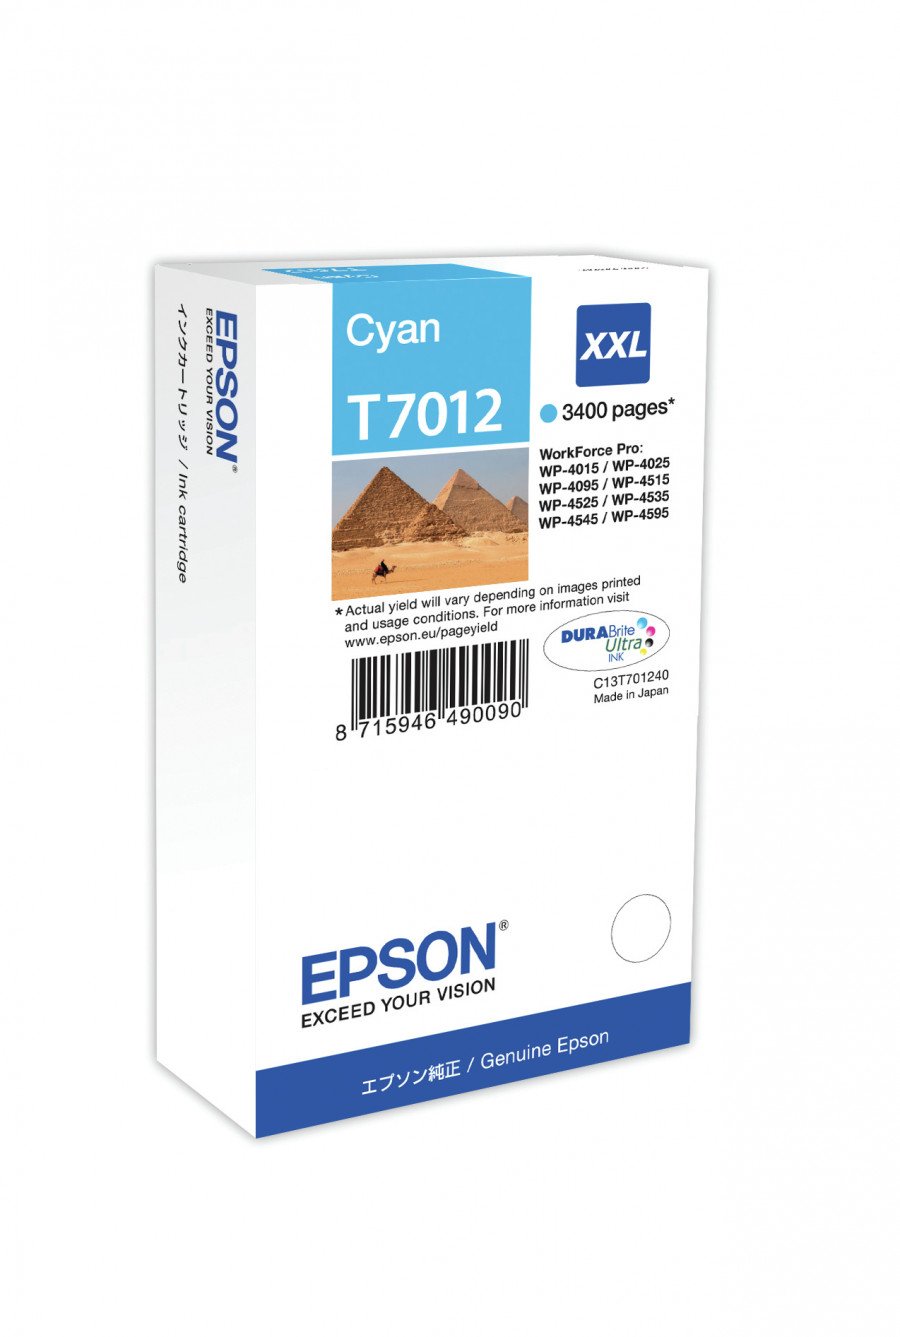 Image of Epson cartuccia t7012 piramidi elevata xxl ciano PIRAMIDI Materiale di consumo Informatica